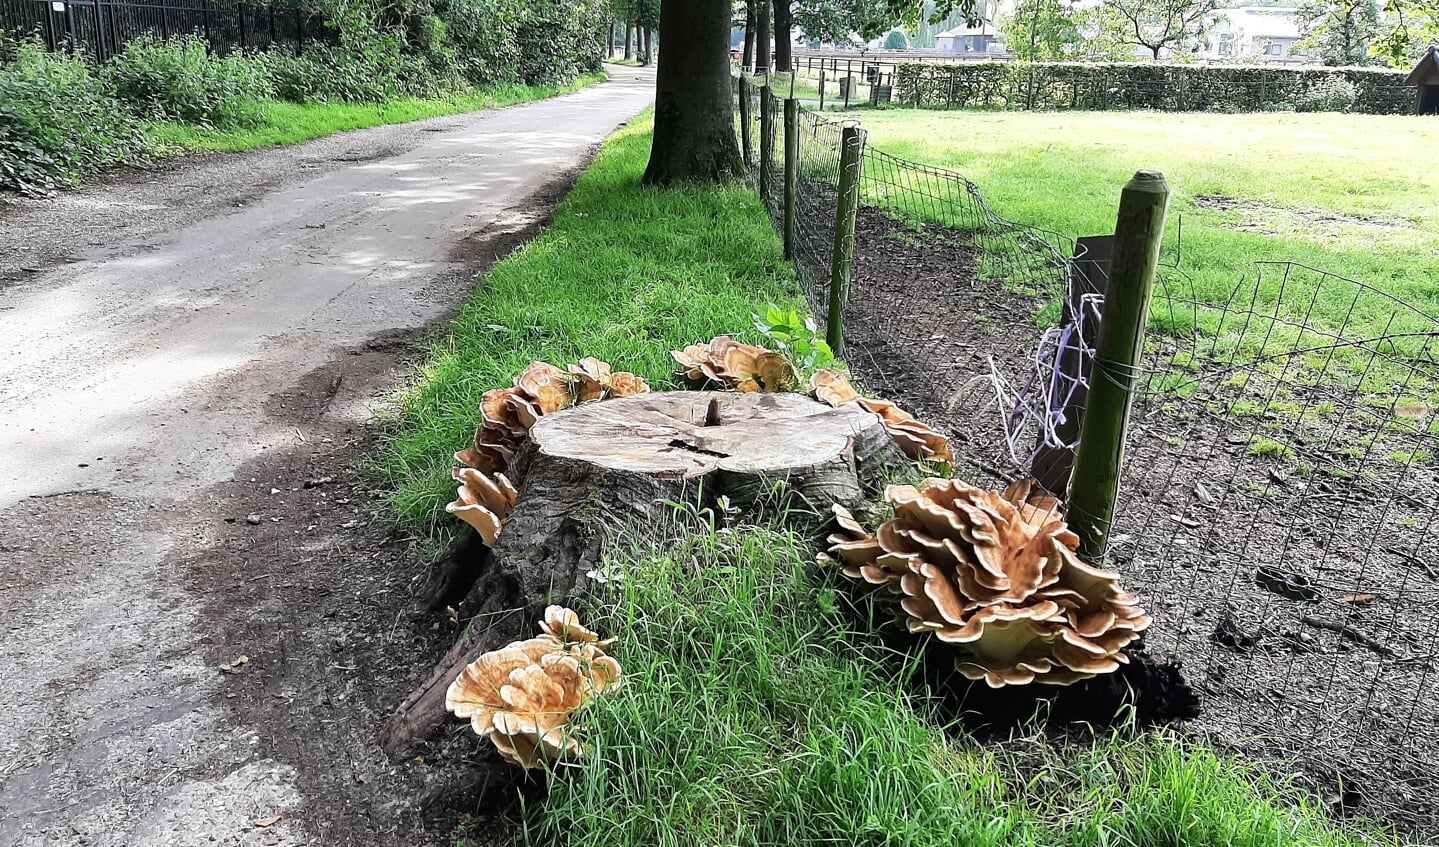 Het is 30 juli 2021, hartje zomer, maar door de vele regenval van de afgelopen dagen schieten de paddenstoelen en zwammen al uit de grond. Deze foto is genomen op de Molenweg te Doorn.